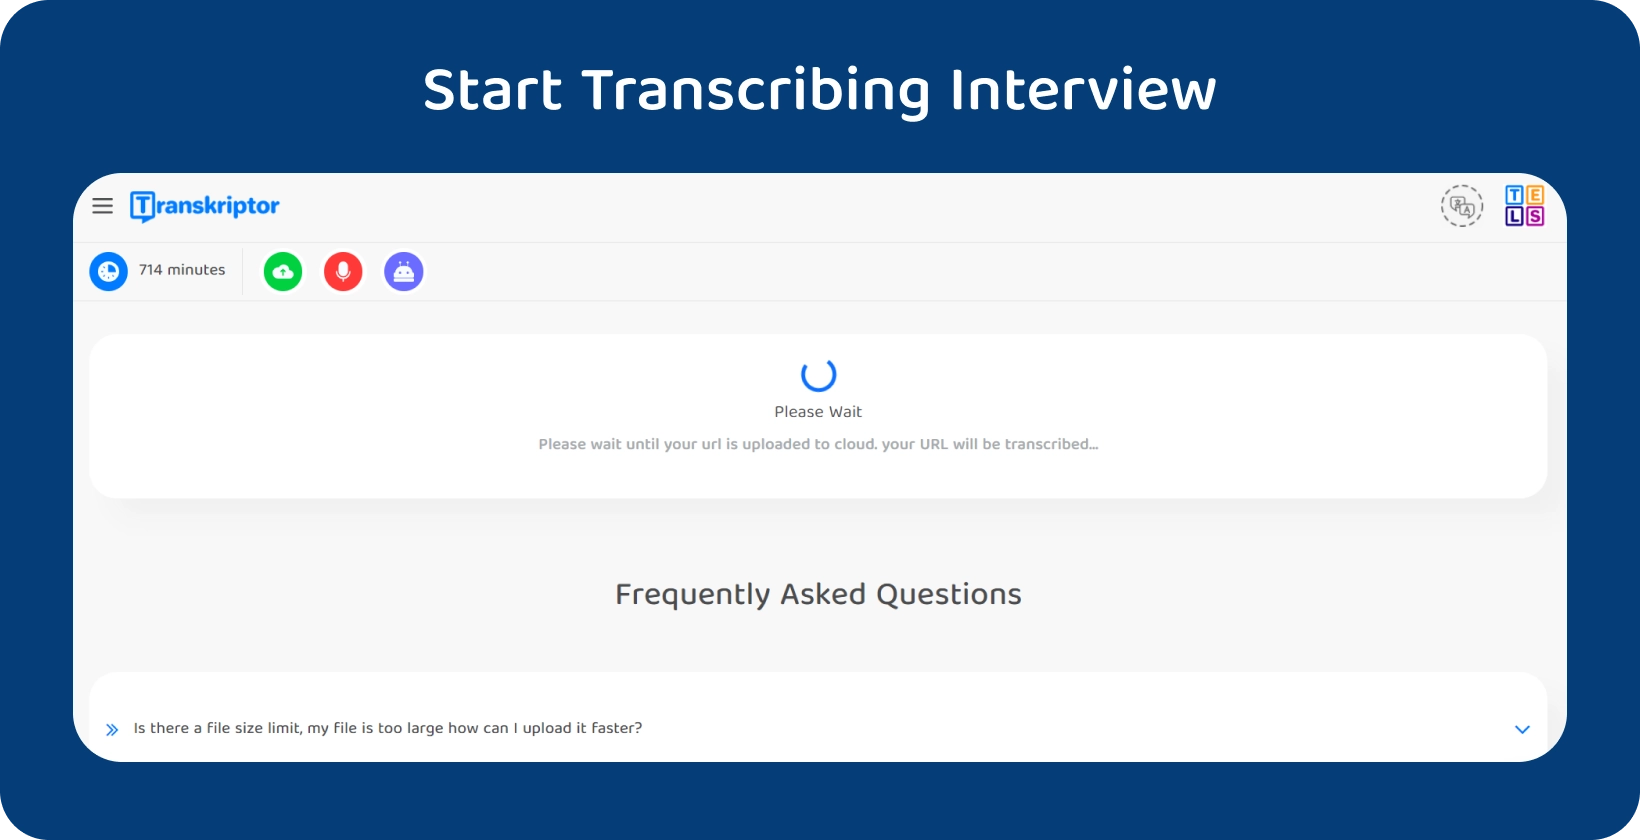 Začnite transkripcijo disertacije s Transkriptor, ki prikazuje 714-minutni intervju, ki čaka na obdelavo.